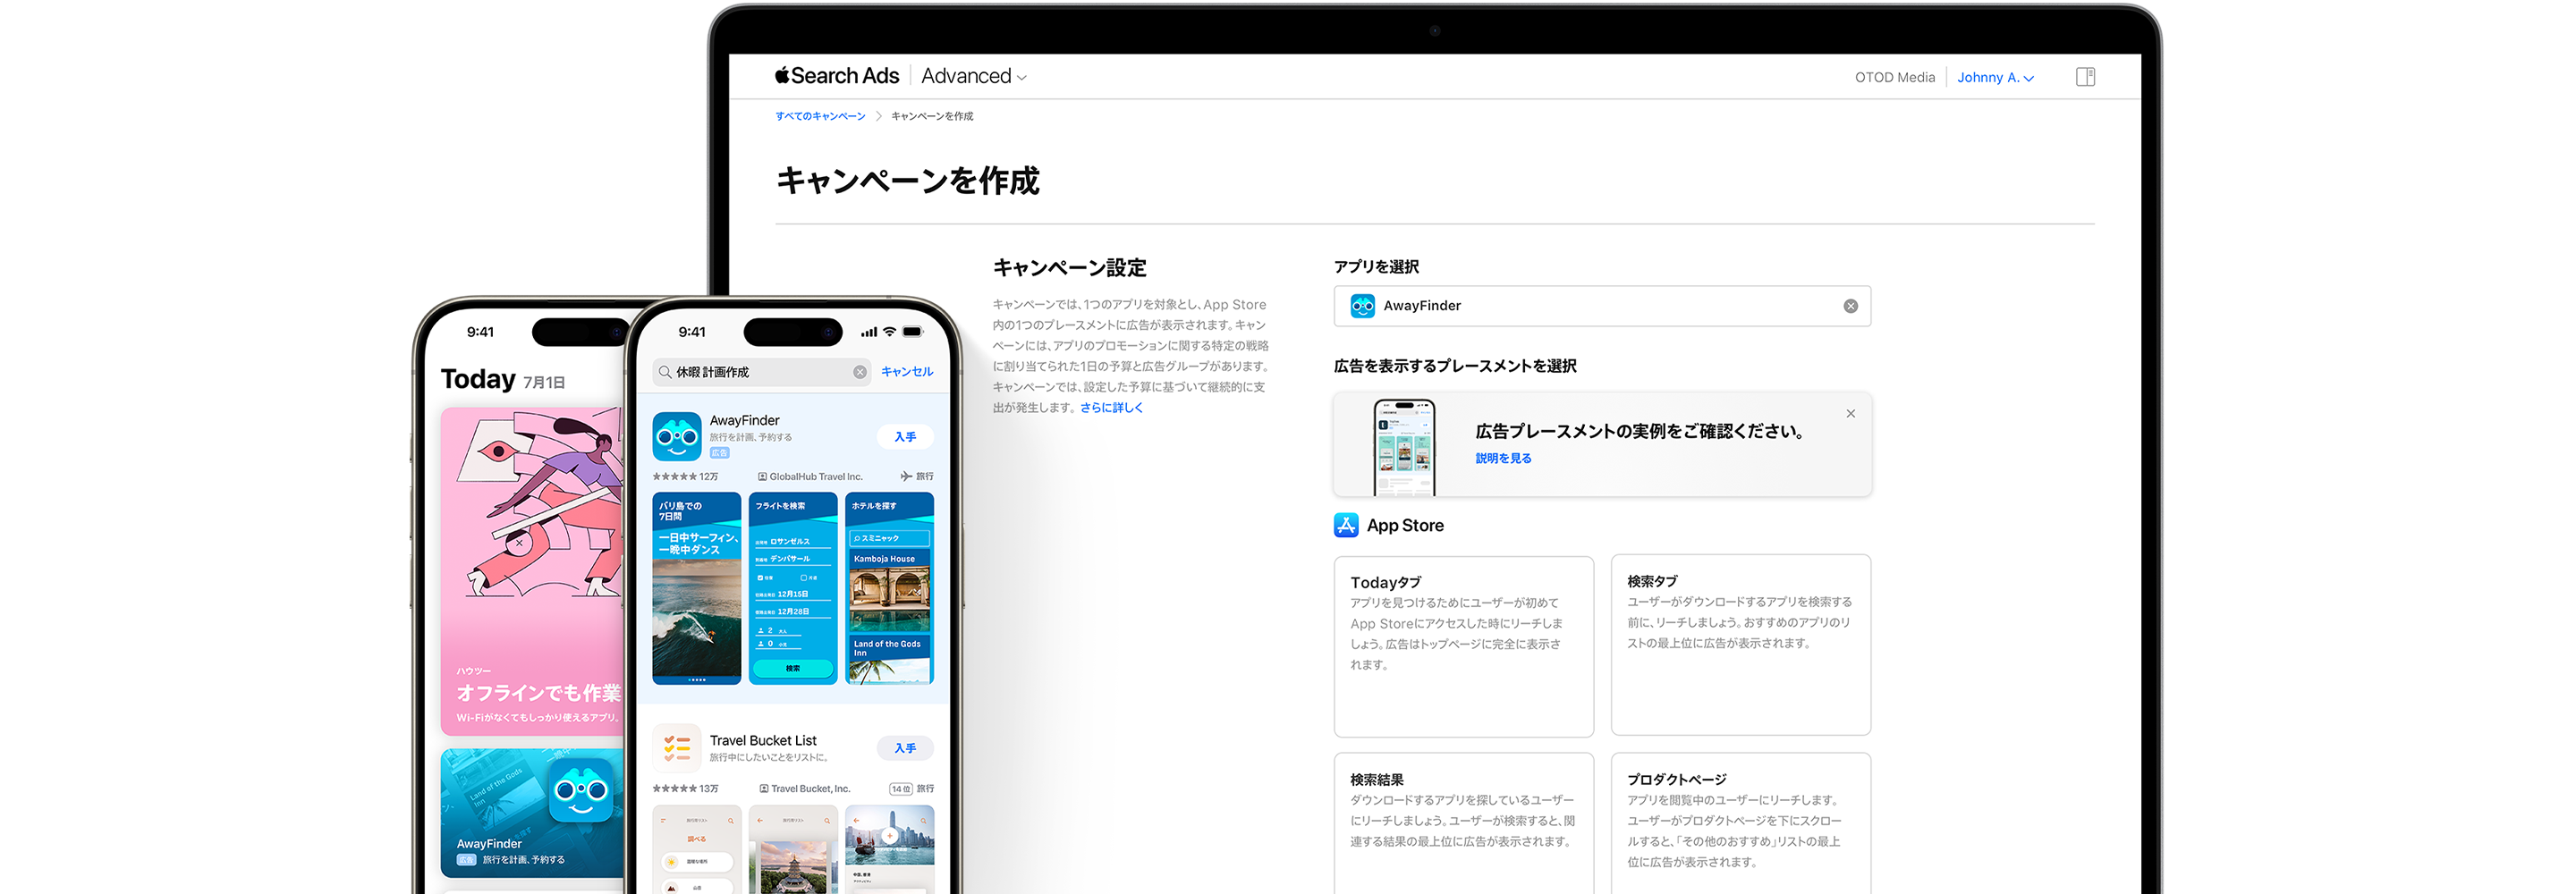 MacBookと2台のiPhone。MacBookには、Apple Search Ads Advancedの「キャンペーンを作成」ページで、Todayタブ、検索タブ、検索結果、プロダクトページの広告プレースメントオプションが表示されている。1つ目のiPhoneには、検索結果でサンプルアプリのAwayFinderが表示されている。2つ目のiPhoneには、TodayタブでAwayFinderの広告が表示されている。